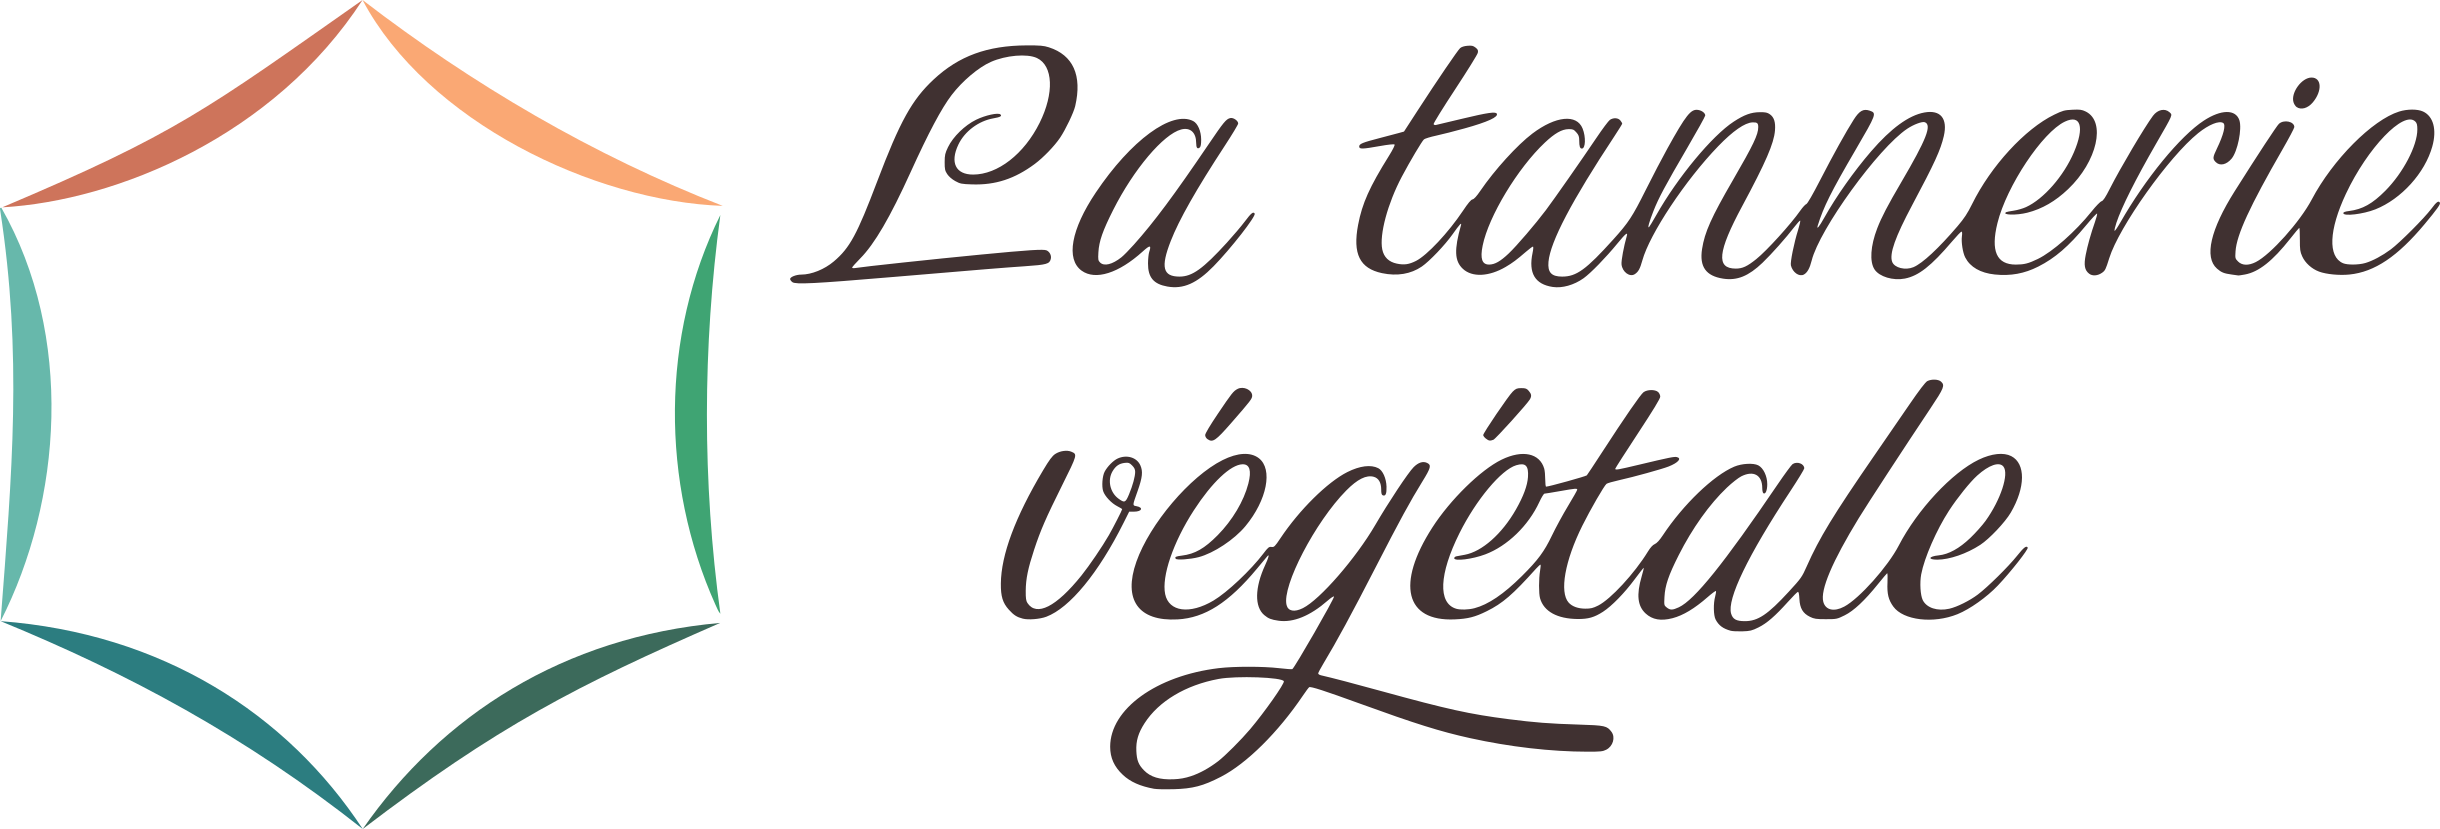 La Tannerie Vegetale, logo membre Bel Air Camp